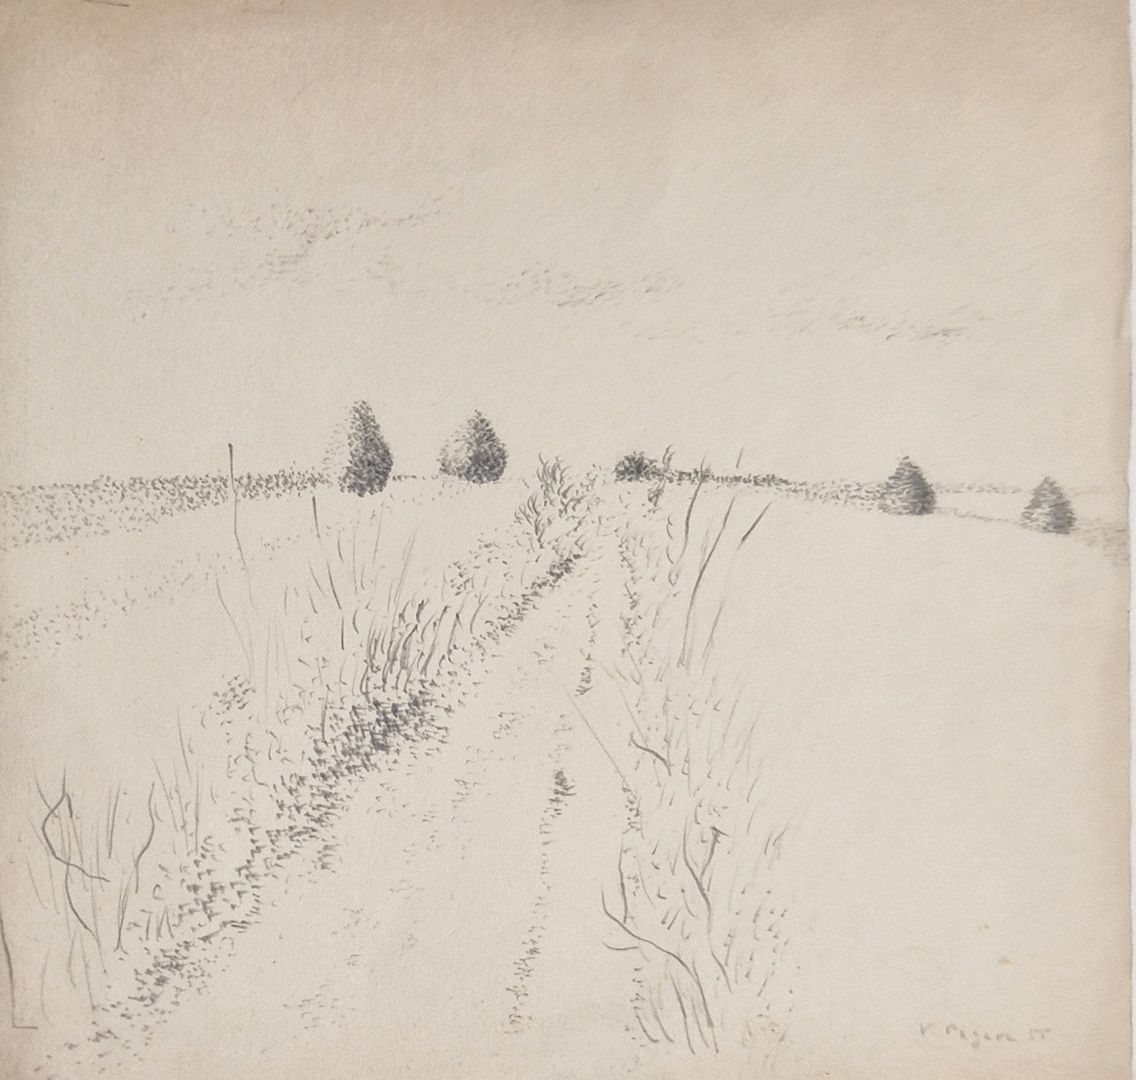 Null 帕加瓦-维拉，1907-1988
乡村小径，1955 年
纸上石墨（隔热），右下方有签名和年代
21 x 21.5 厘米